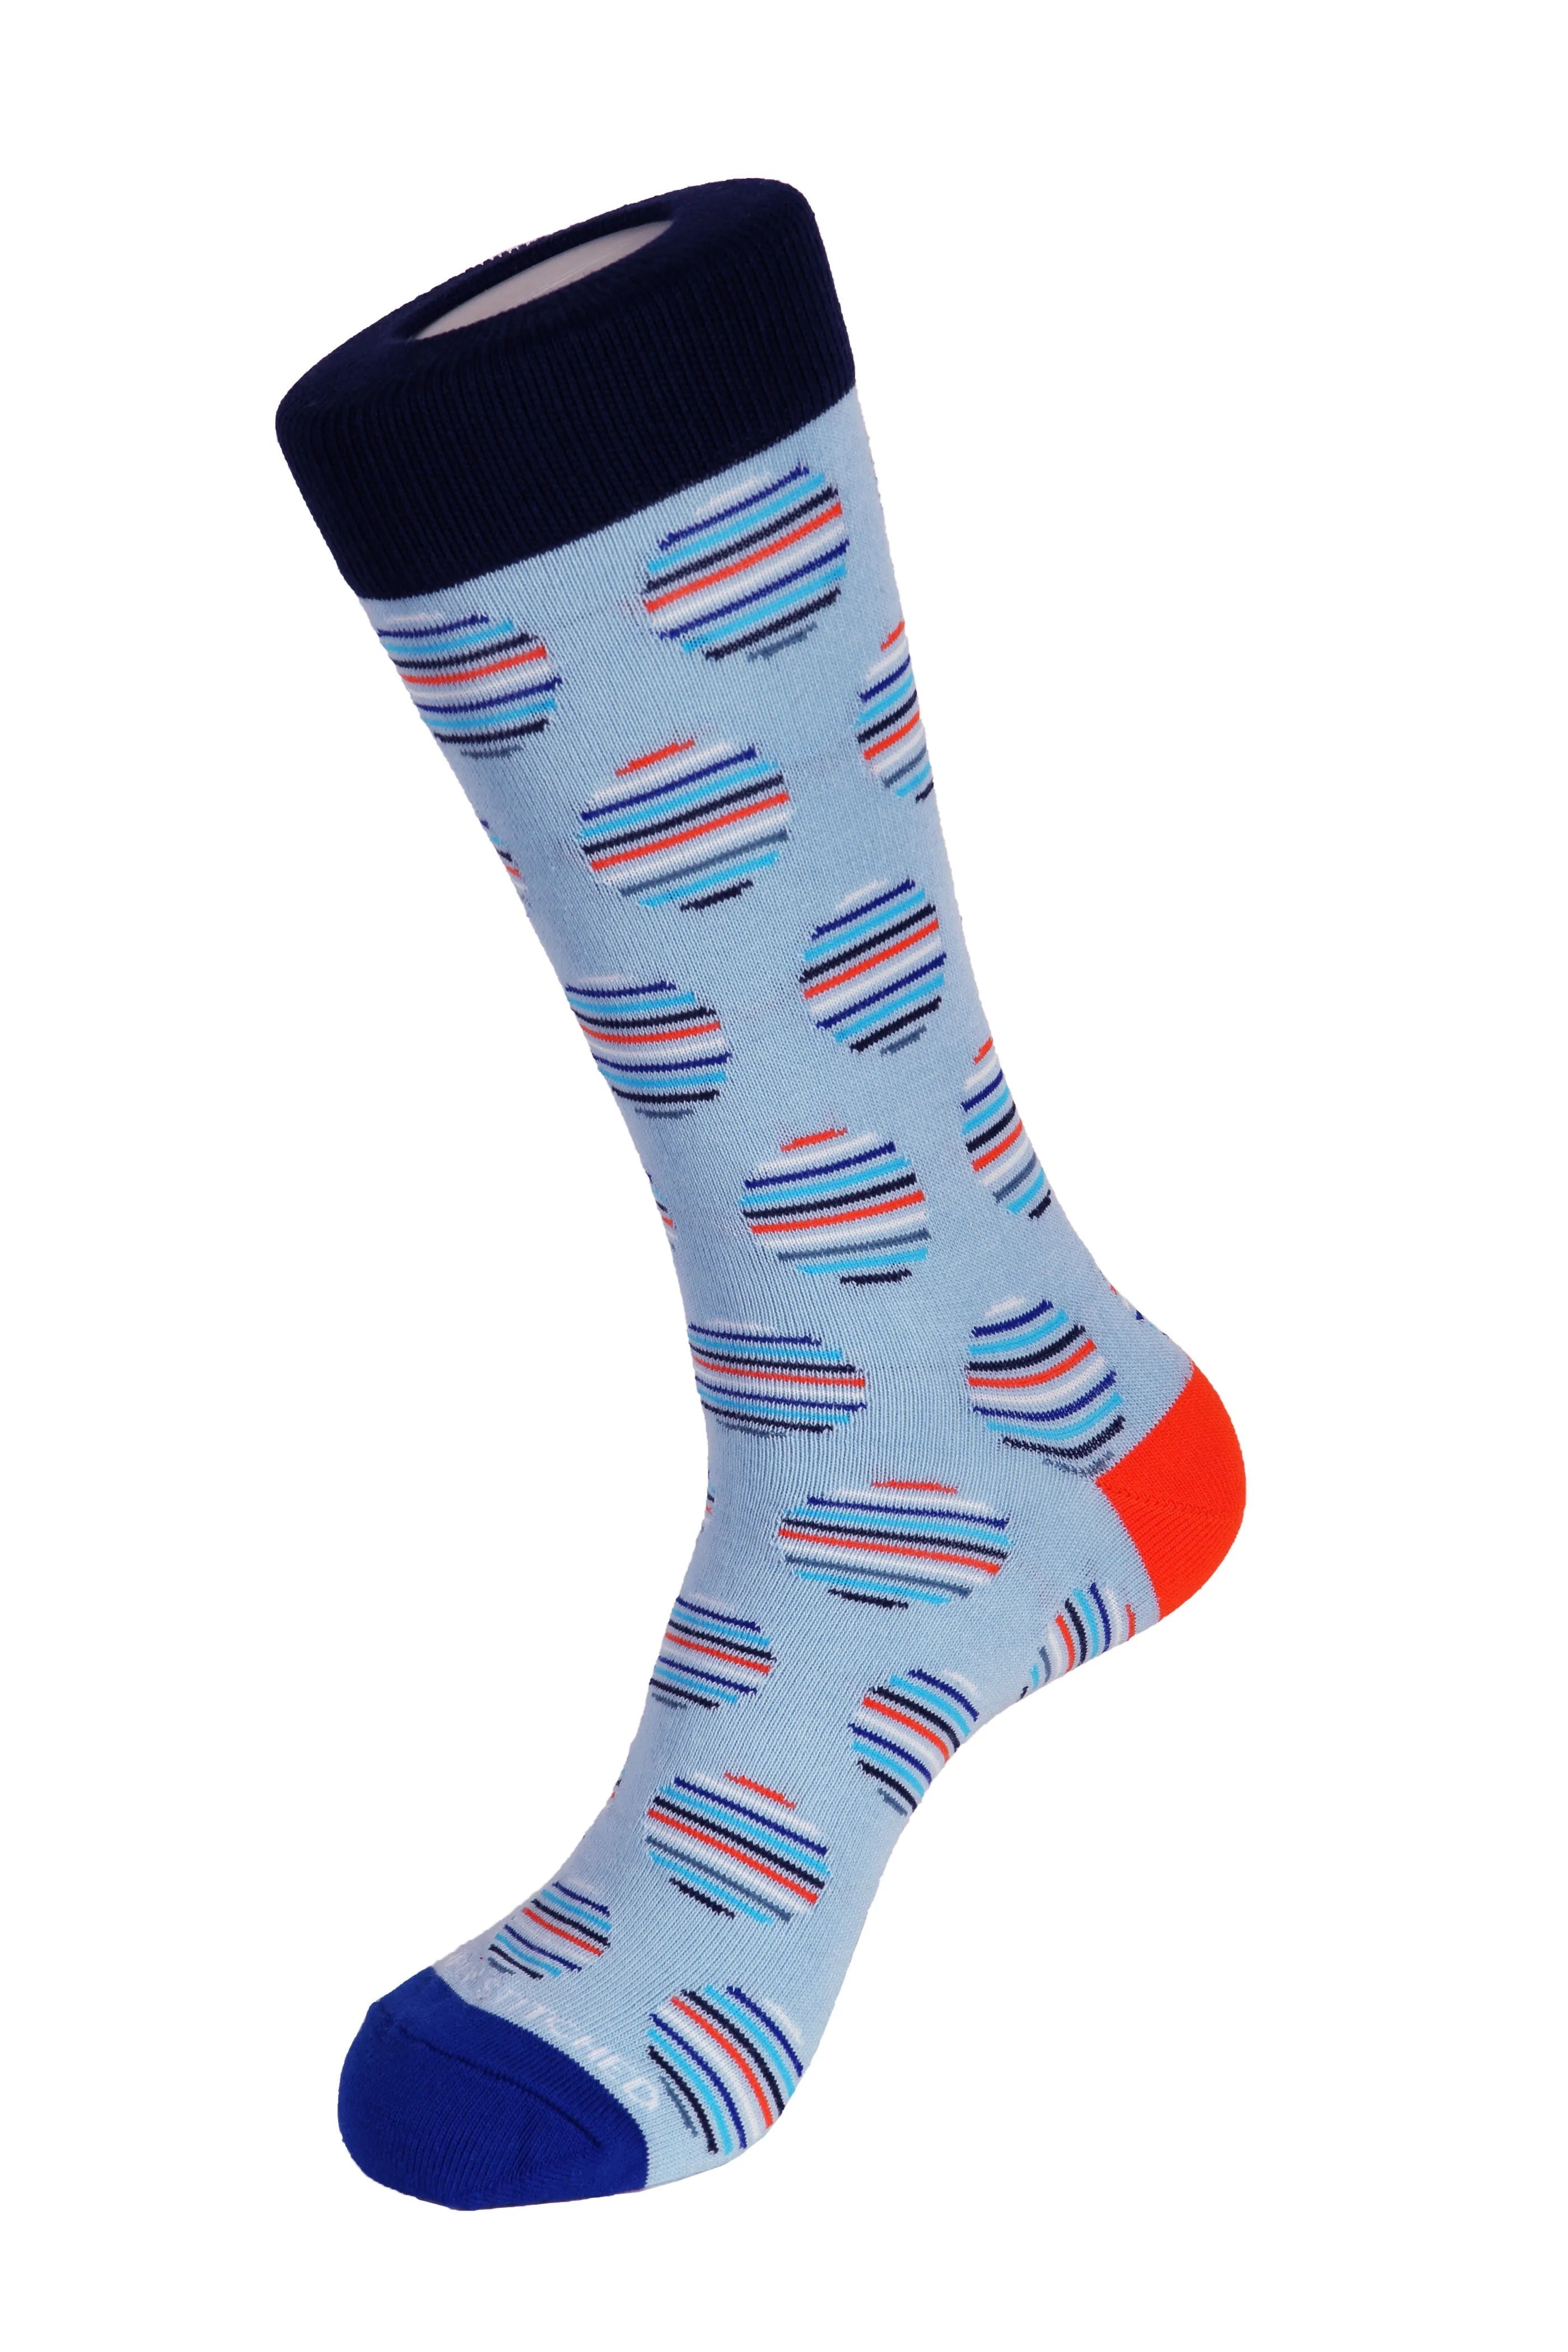 Striped Polka Dot Socks - Men's Socks at Menzclub